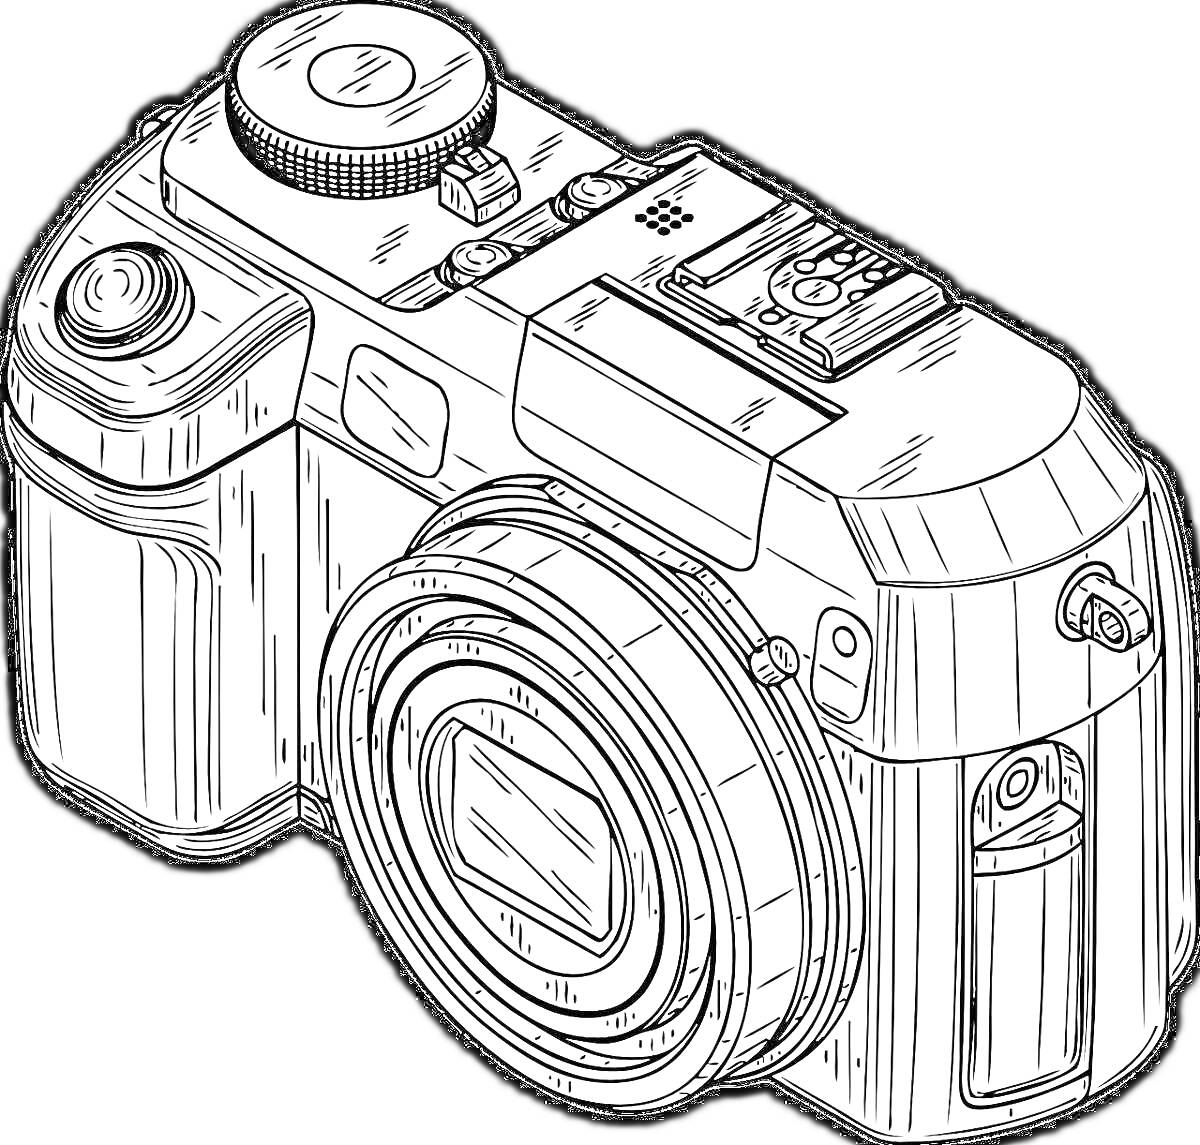 Фотоаппарат с объективом и элементами управления (кнопки, диск, крепление для вспышки)